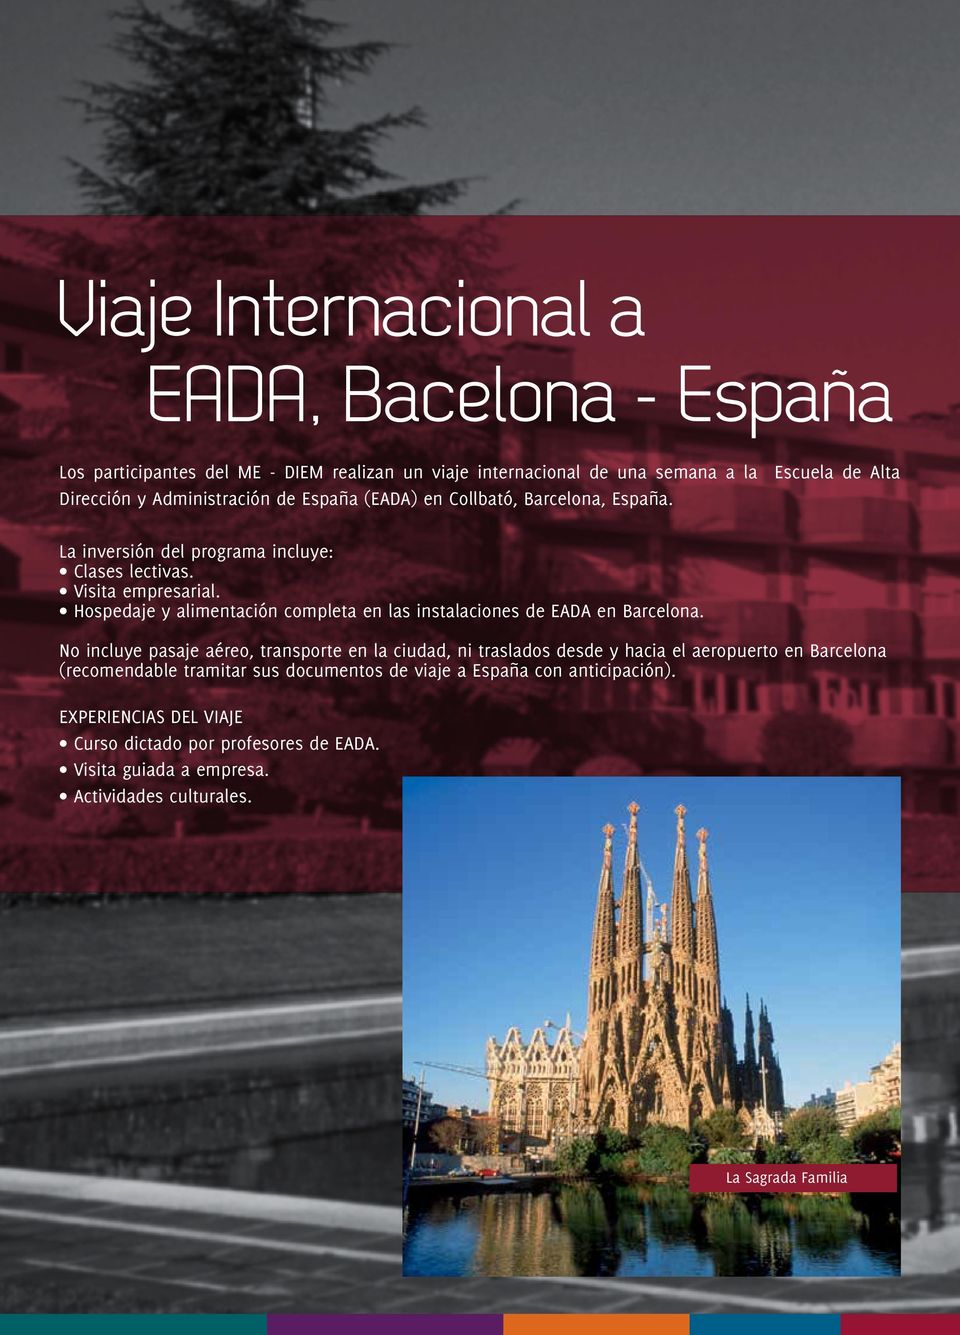 Hospedaje y alimentación completa en las instalaciones de EADA en Barcelona.